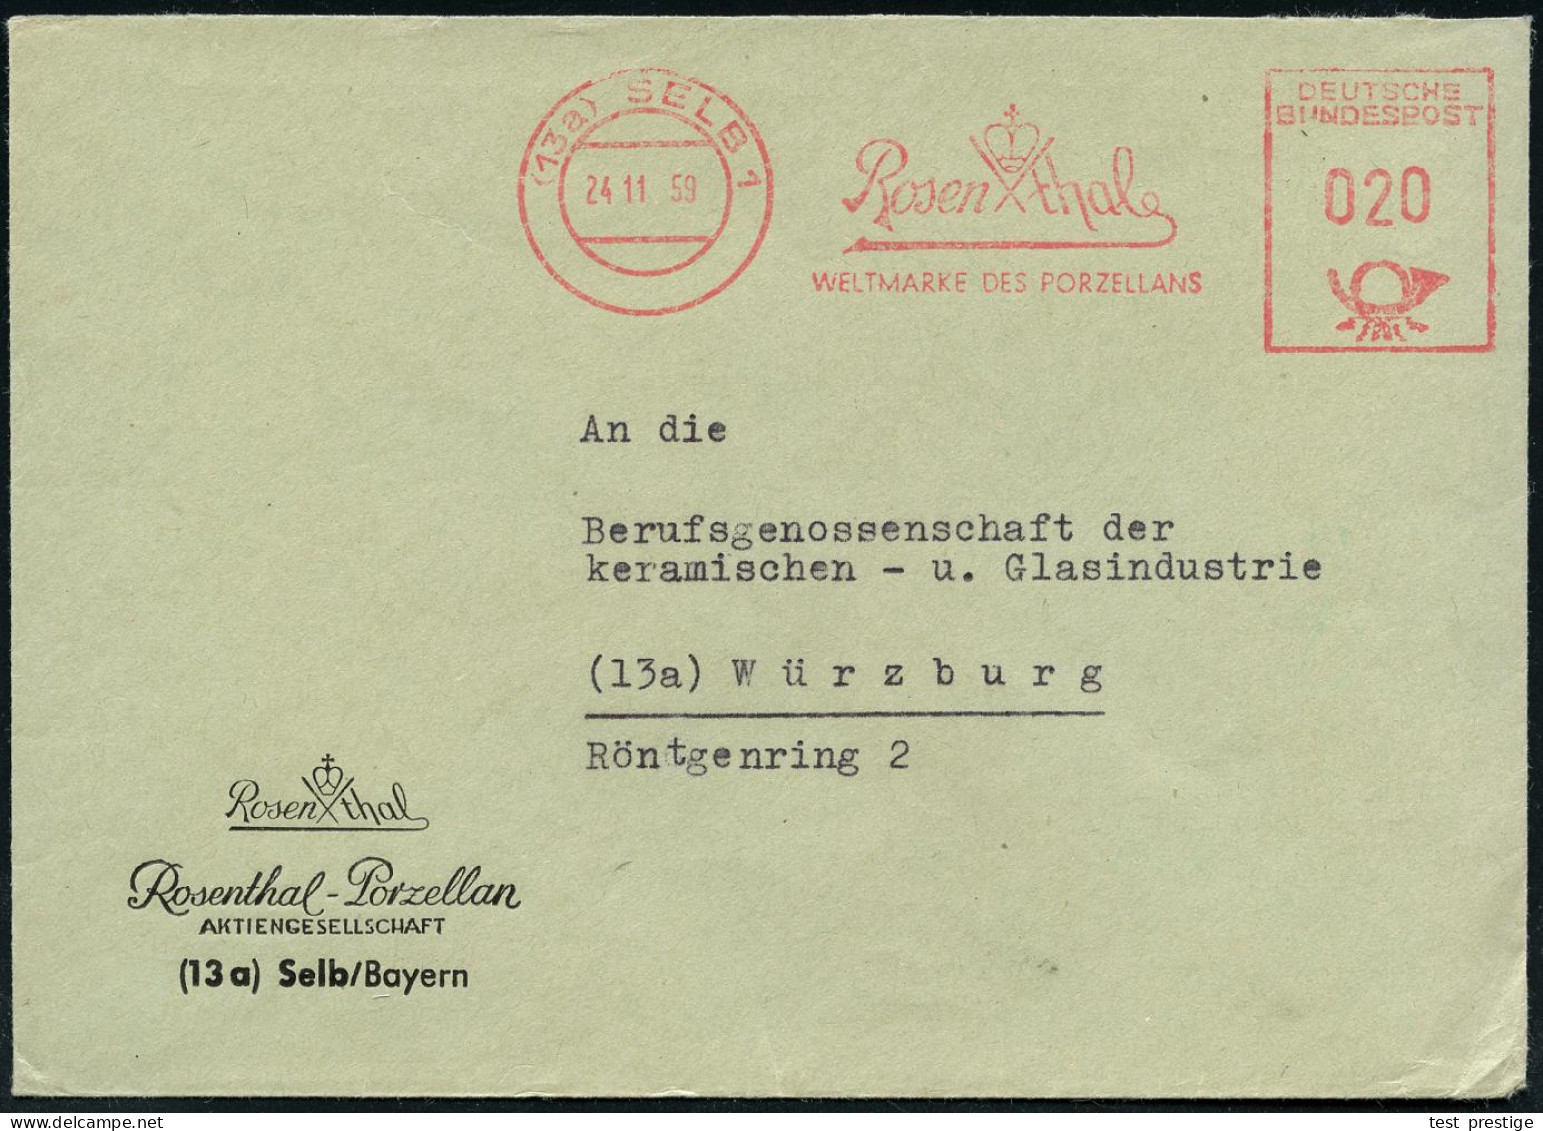 (13a) SELB 1/ Rosenthal/ WELTMARKE DES PORZELLANS 1959 (24.11.) AFS (Firmen-Logo) Motivgl. Firmen-Bf. (Dü.E-23CO) - KERA - Porcelain